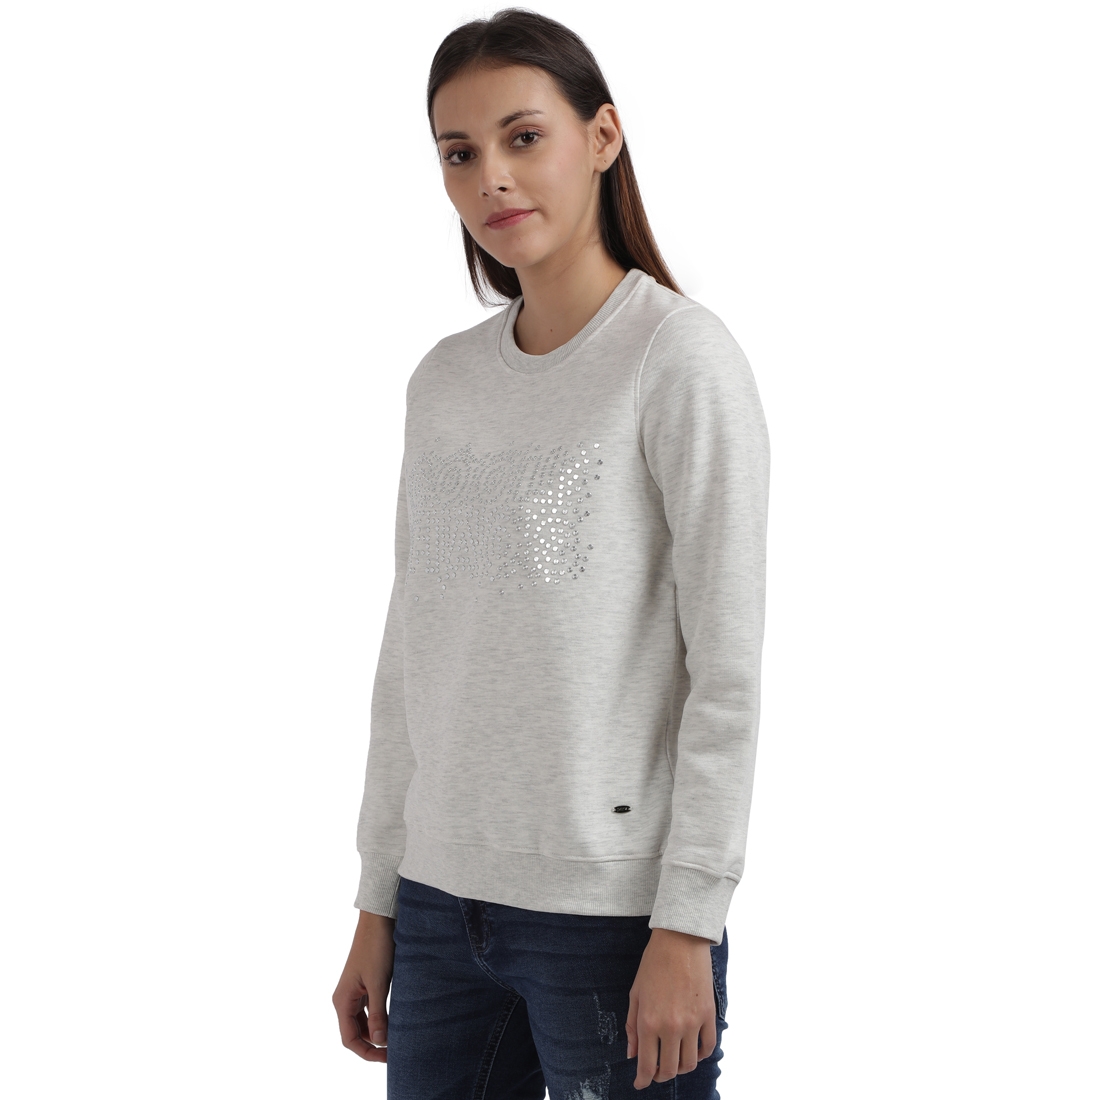 Parx Woman | Parx Woman White Sweatshirt 2